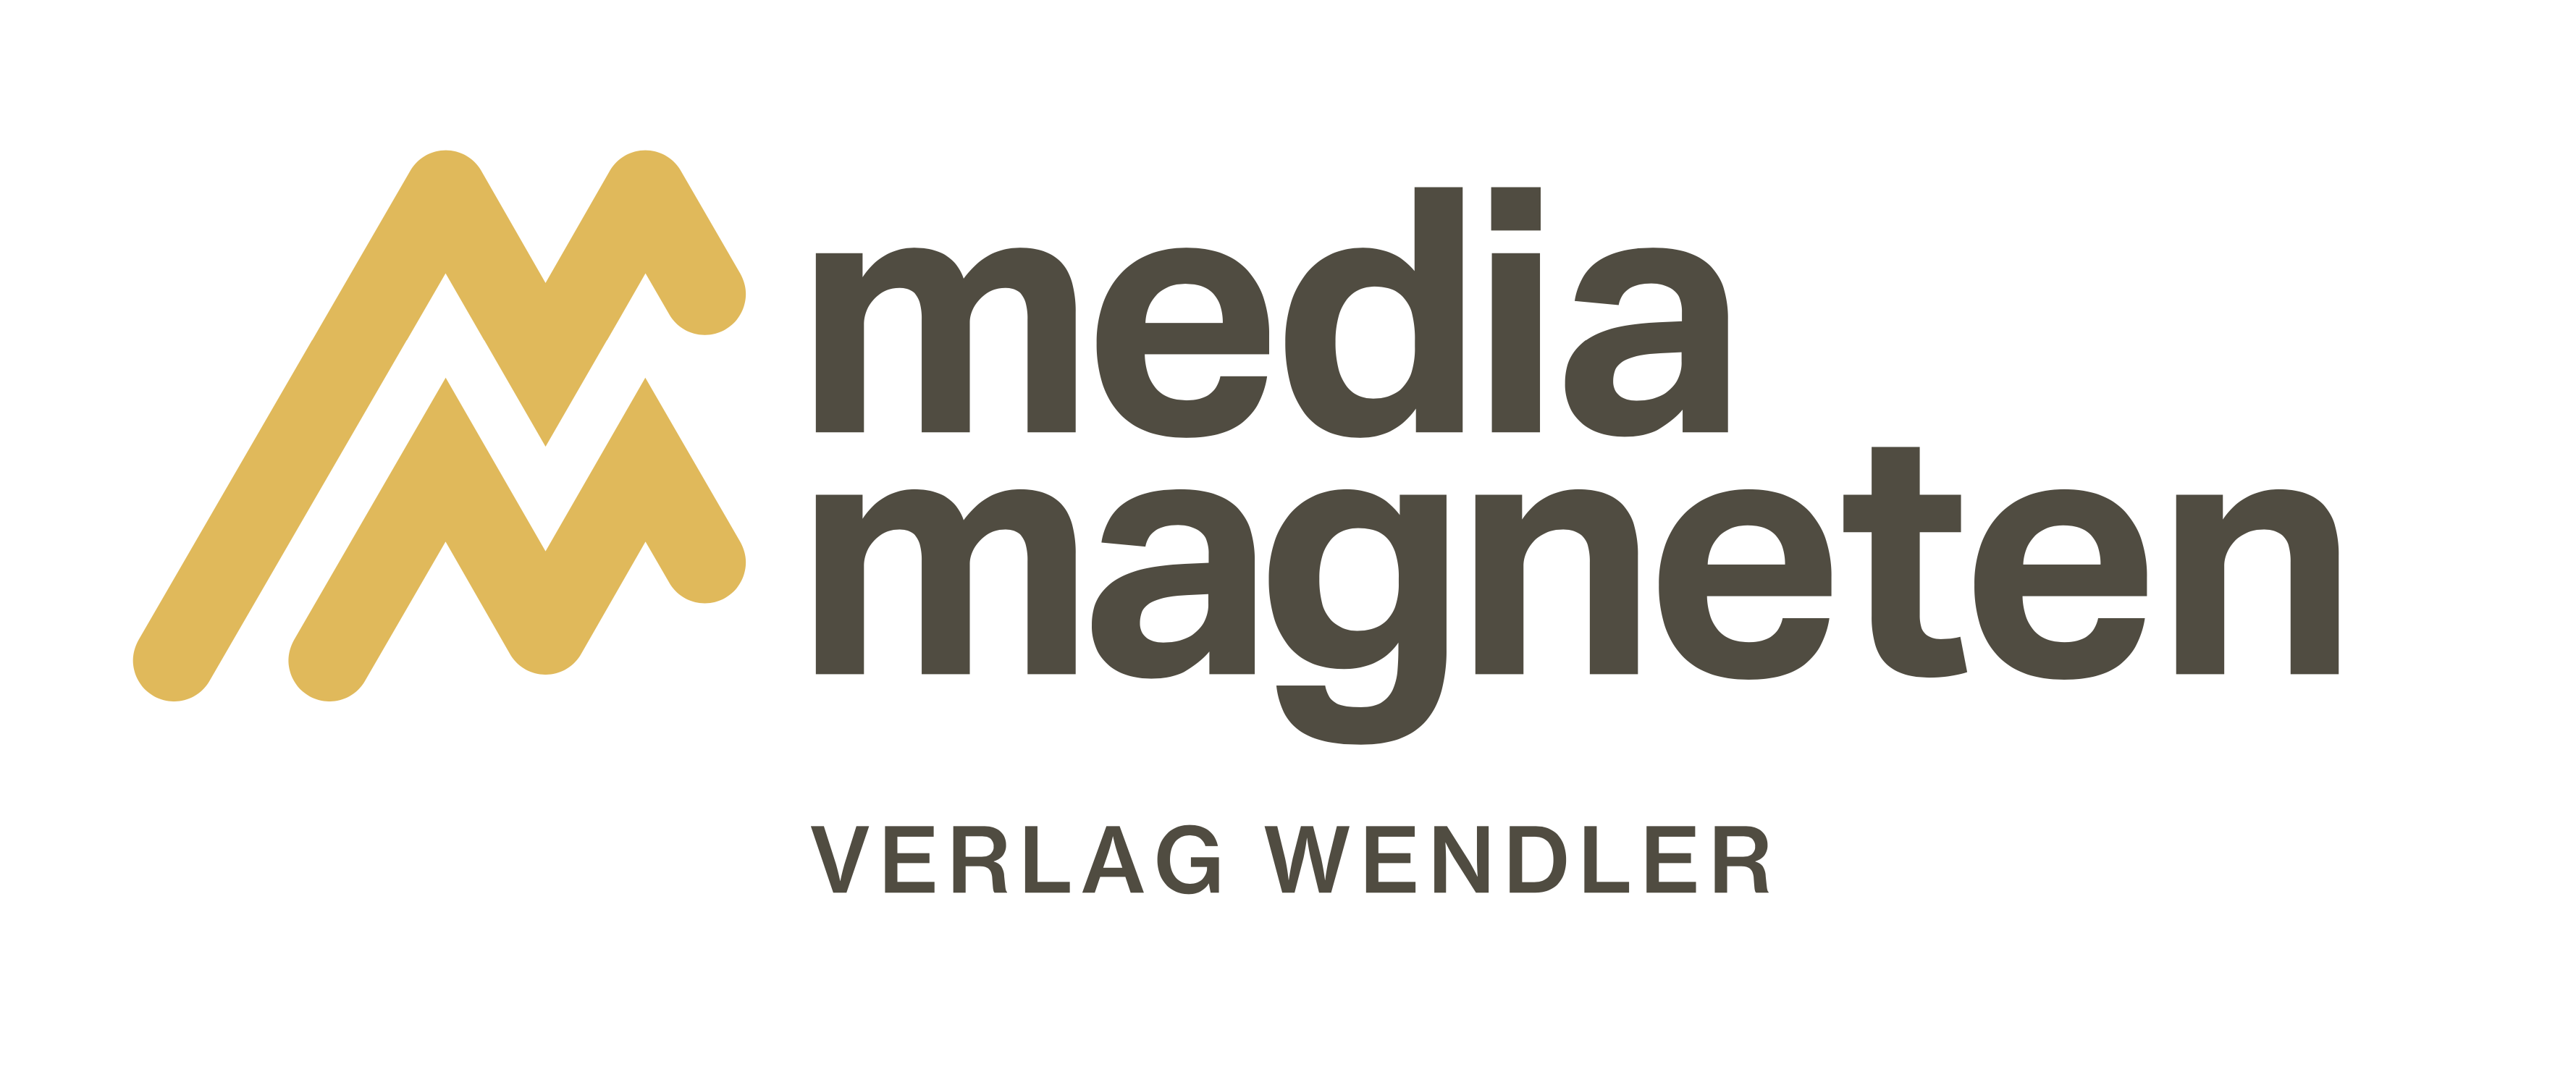 Verlag Wendler in Aachen Verlautenheide - Verlag für Verzeichnismedien und Webdesign